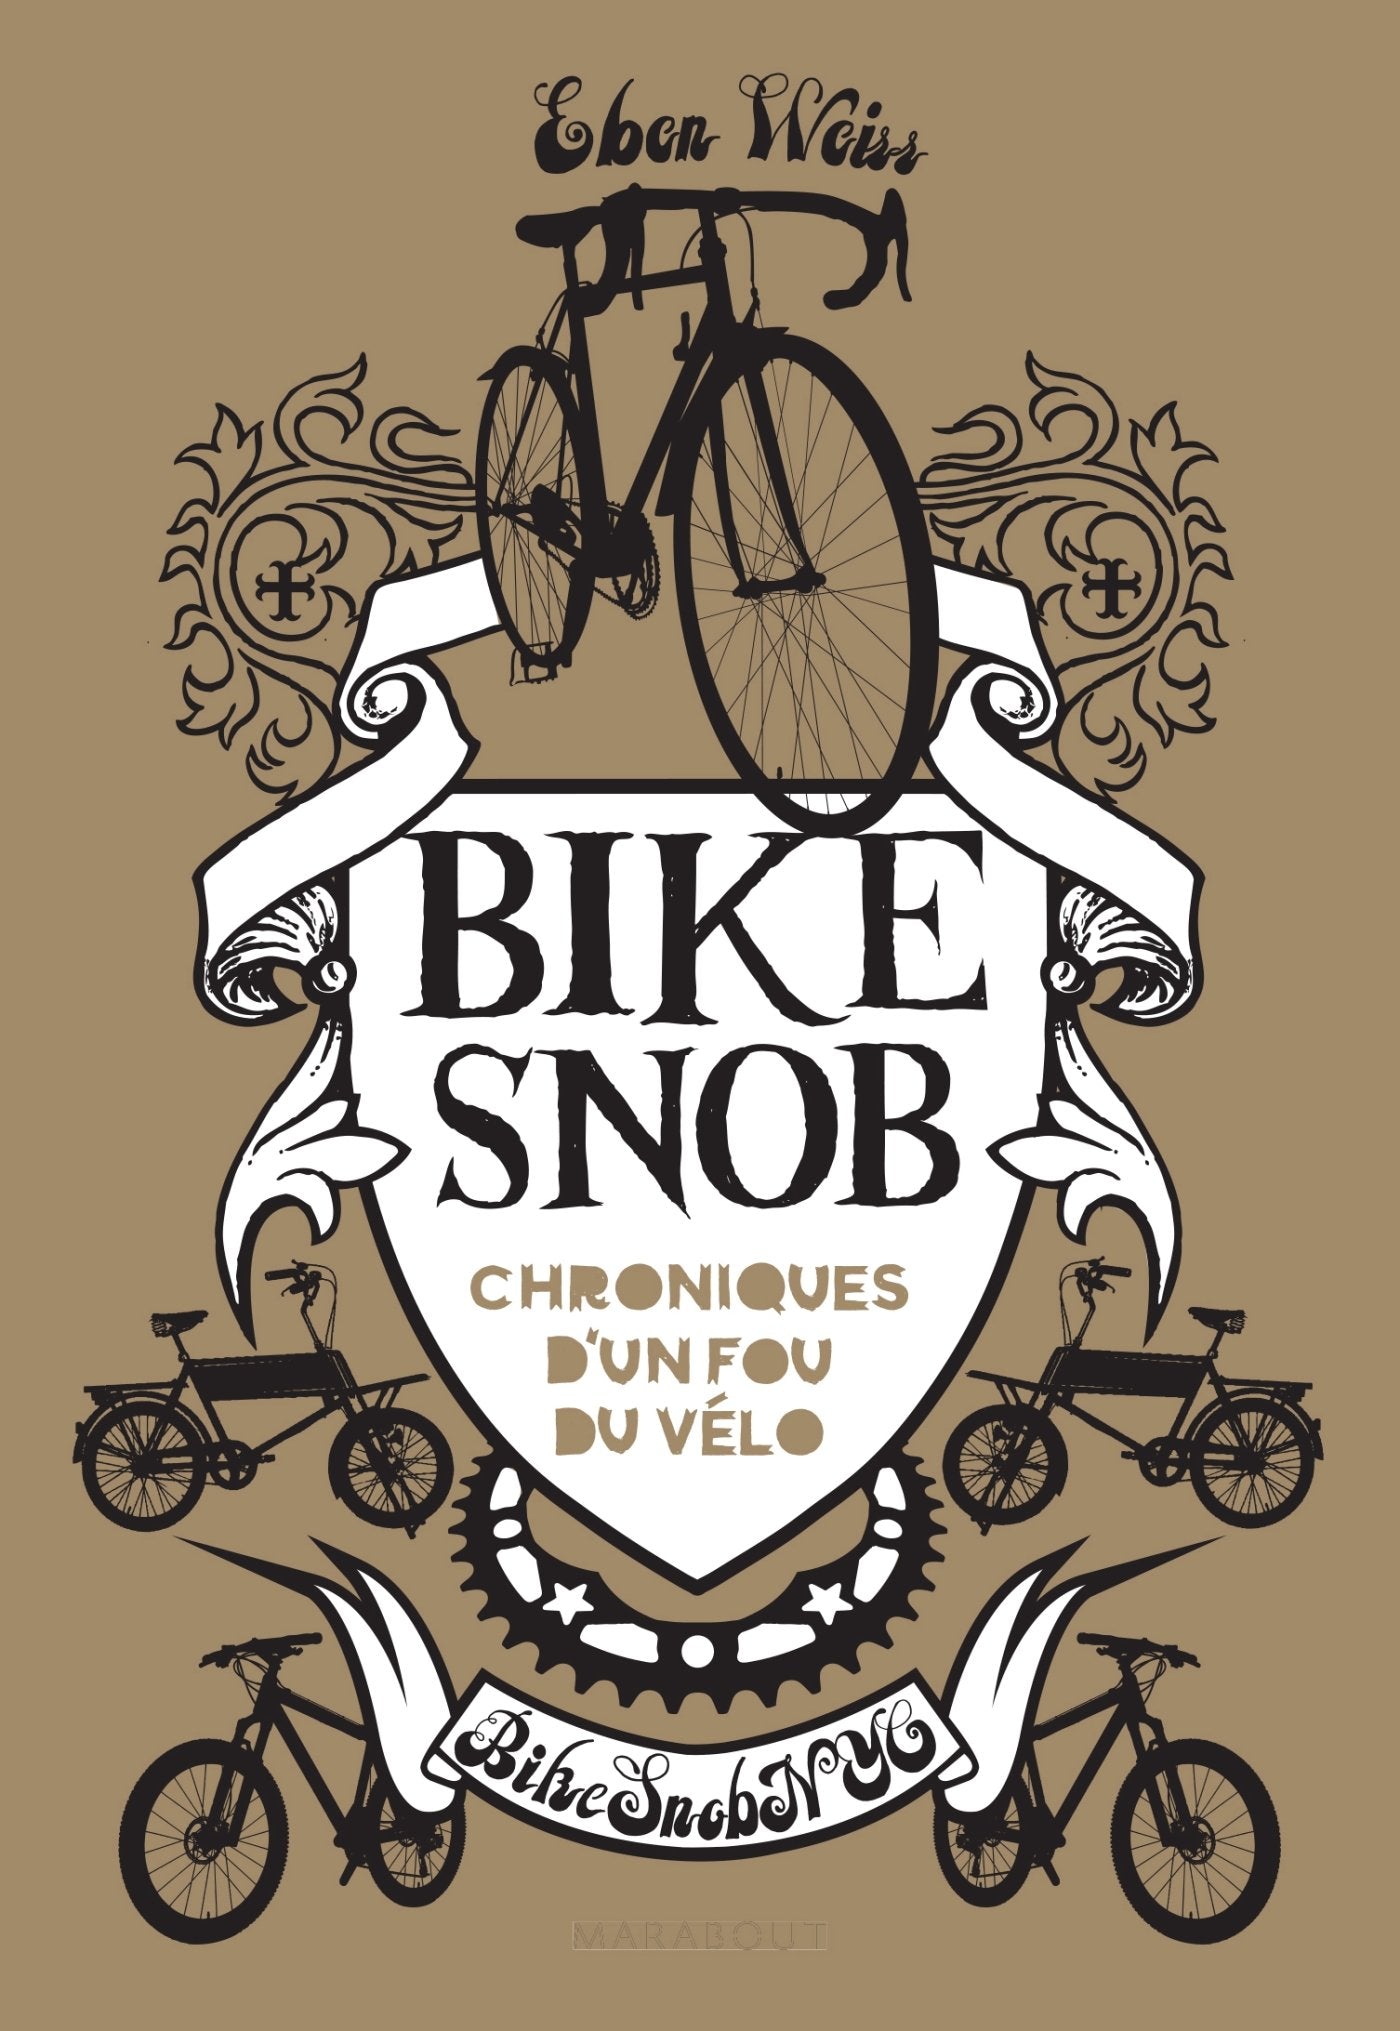 Bike snob : chroniques d'un fou du vélo - Eben Weiss